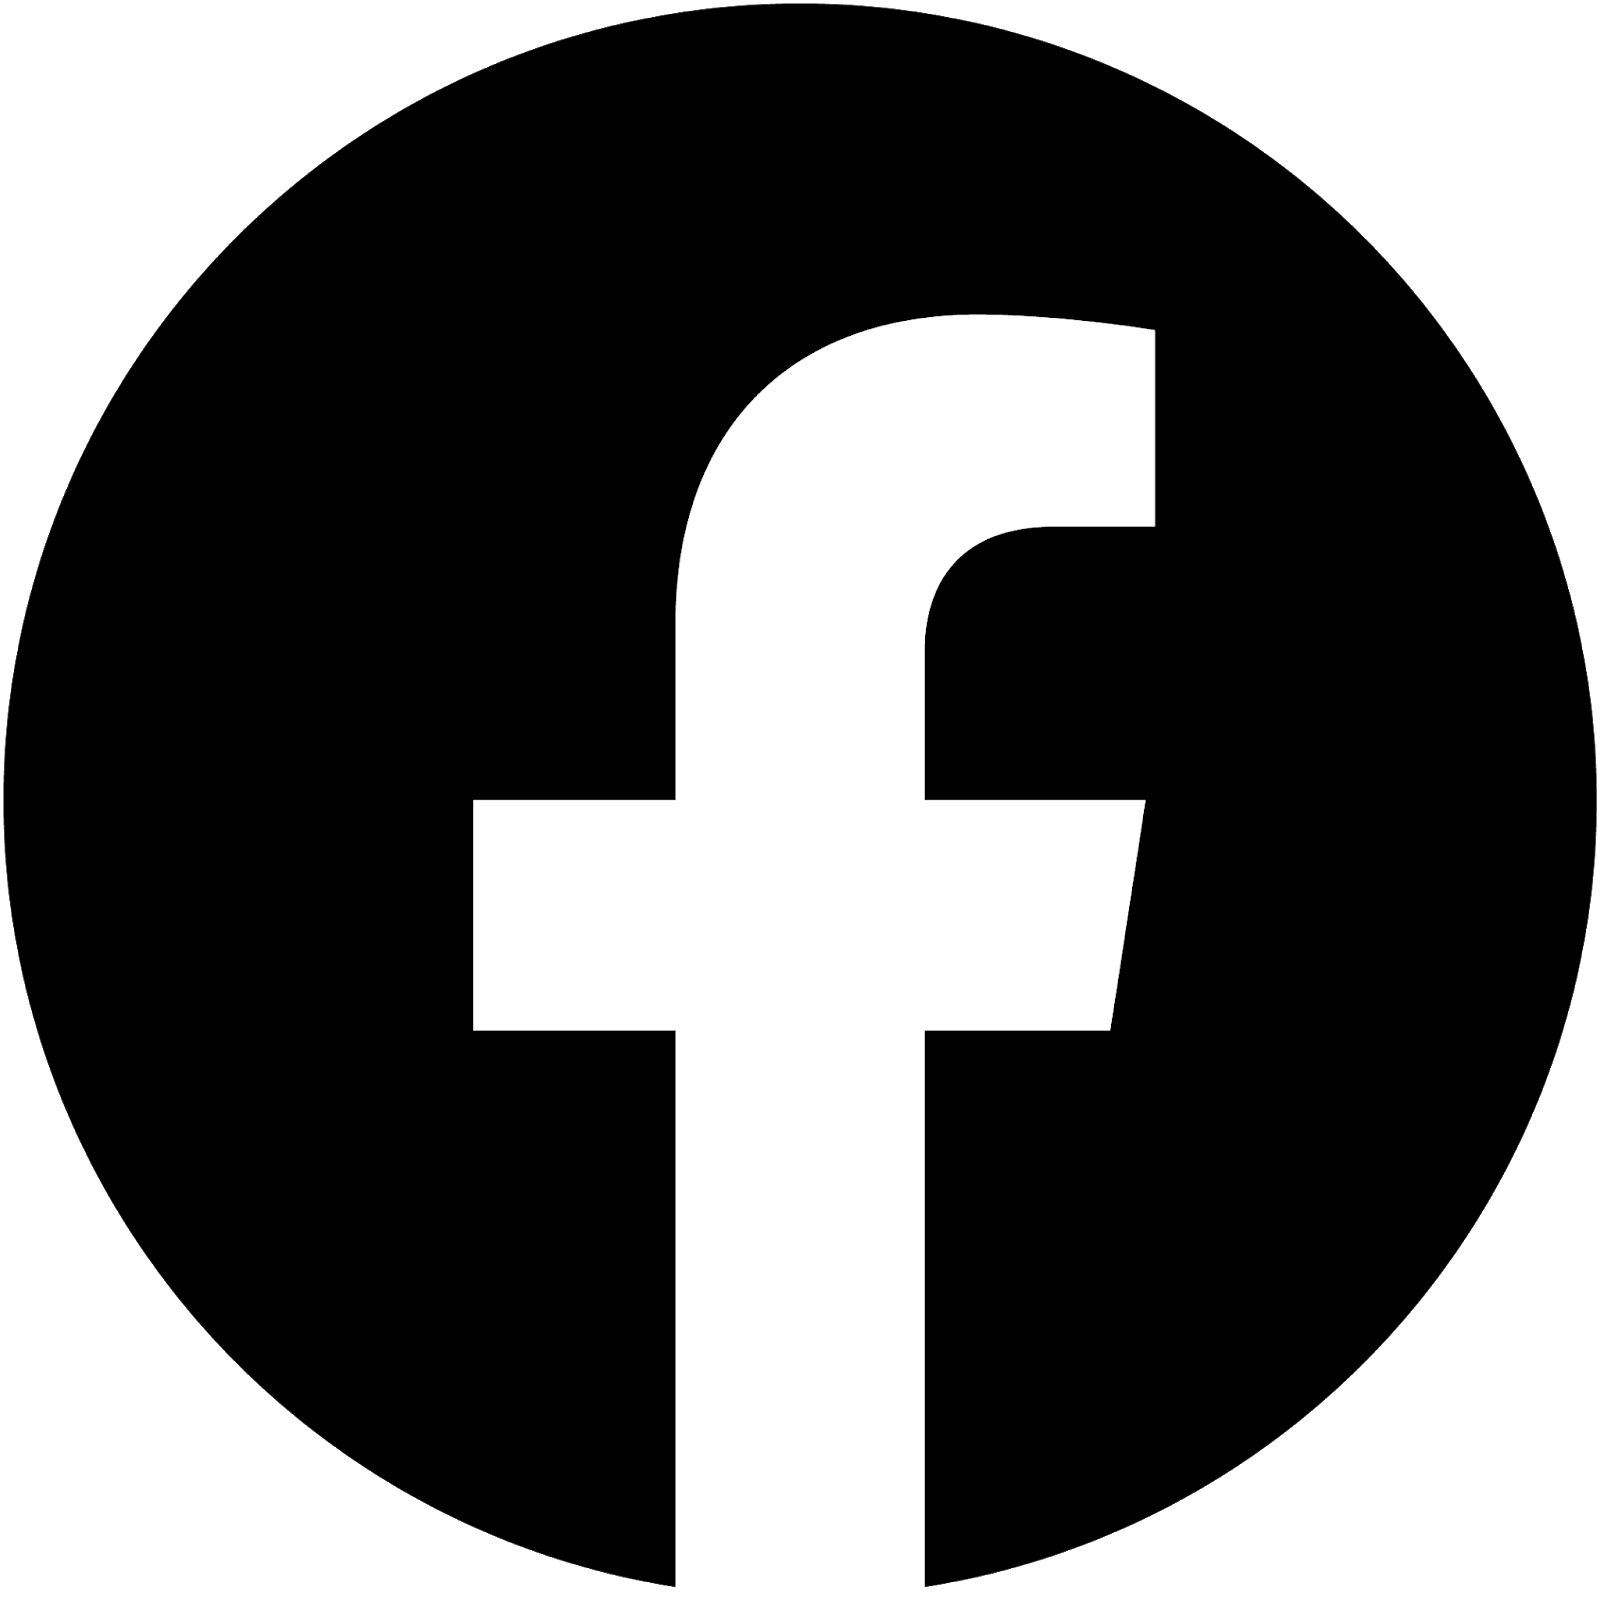 Facebook icon svg free download - pumpose